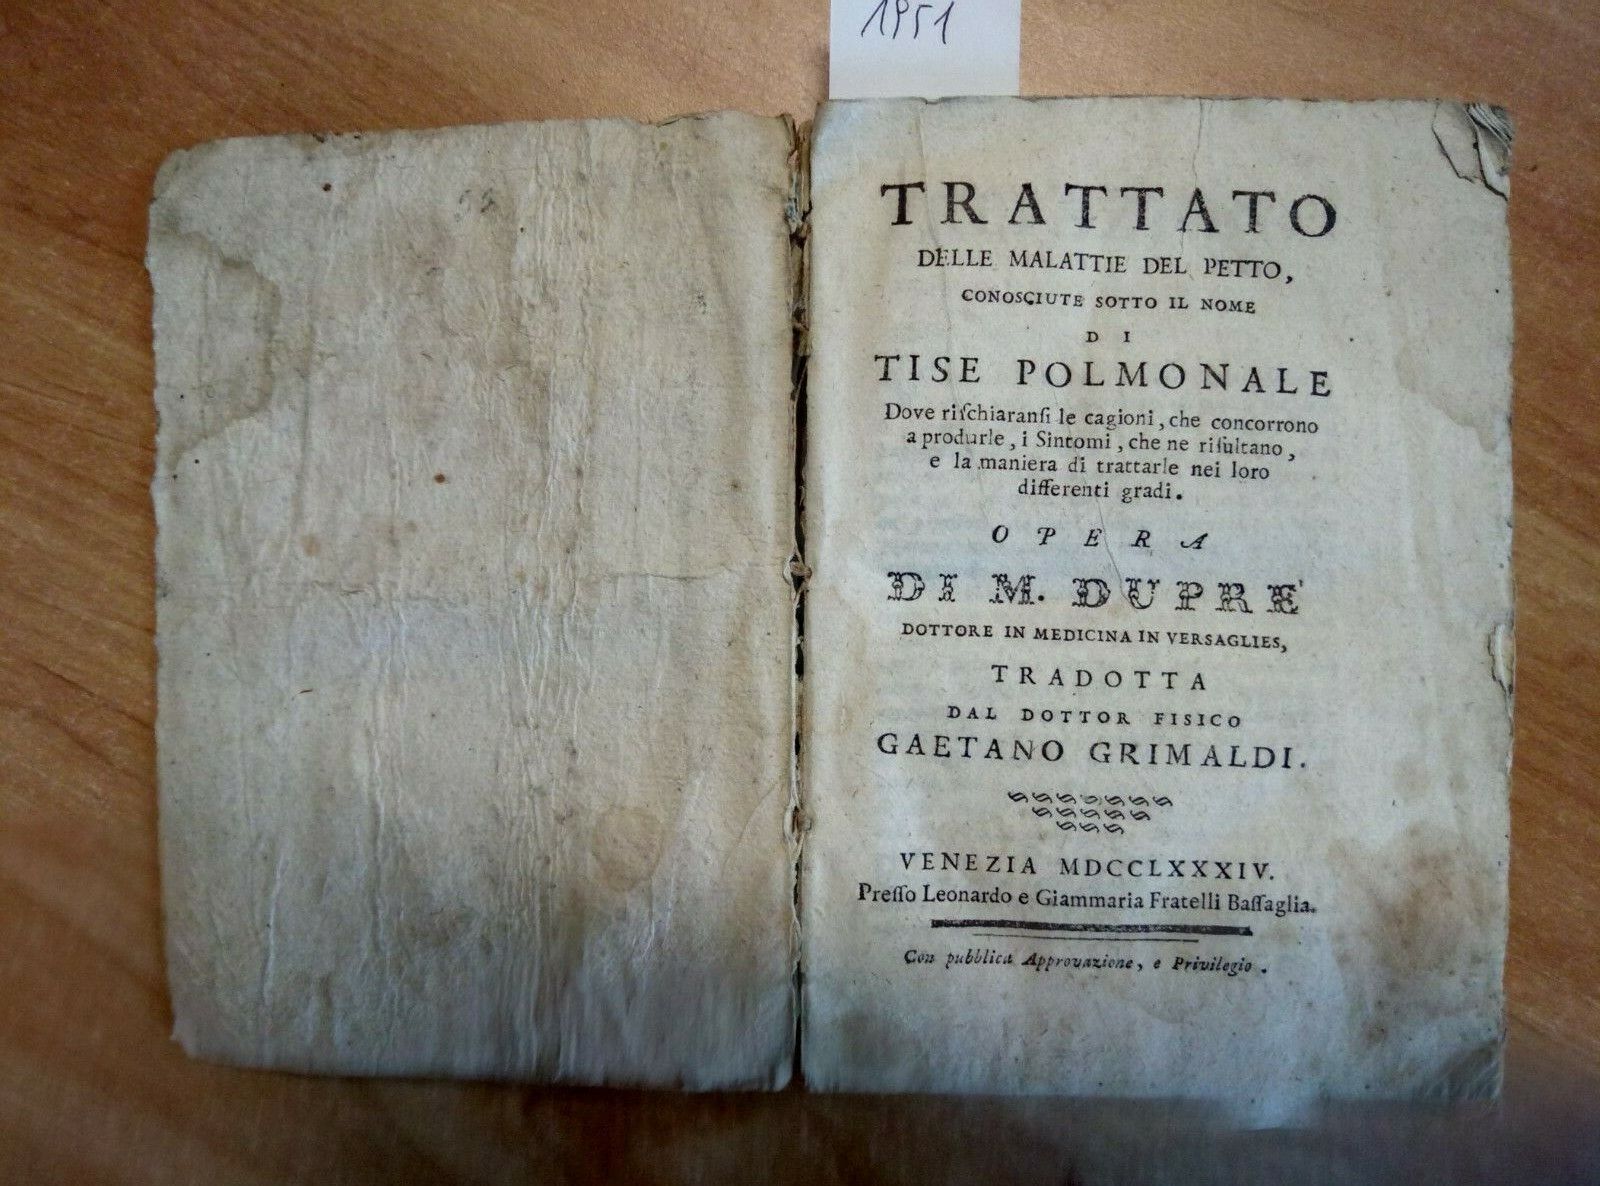 1784 TRATTATO DELLE MALATTIE DEL PETTO TISE POLMONALE - DUPRE\' - GRIMALDI